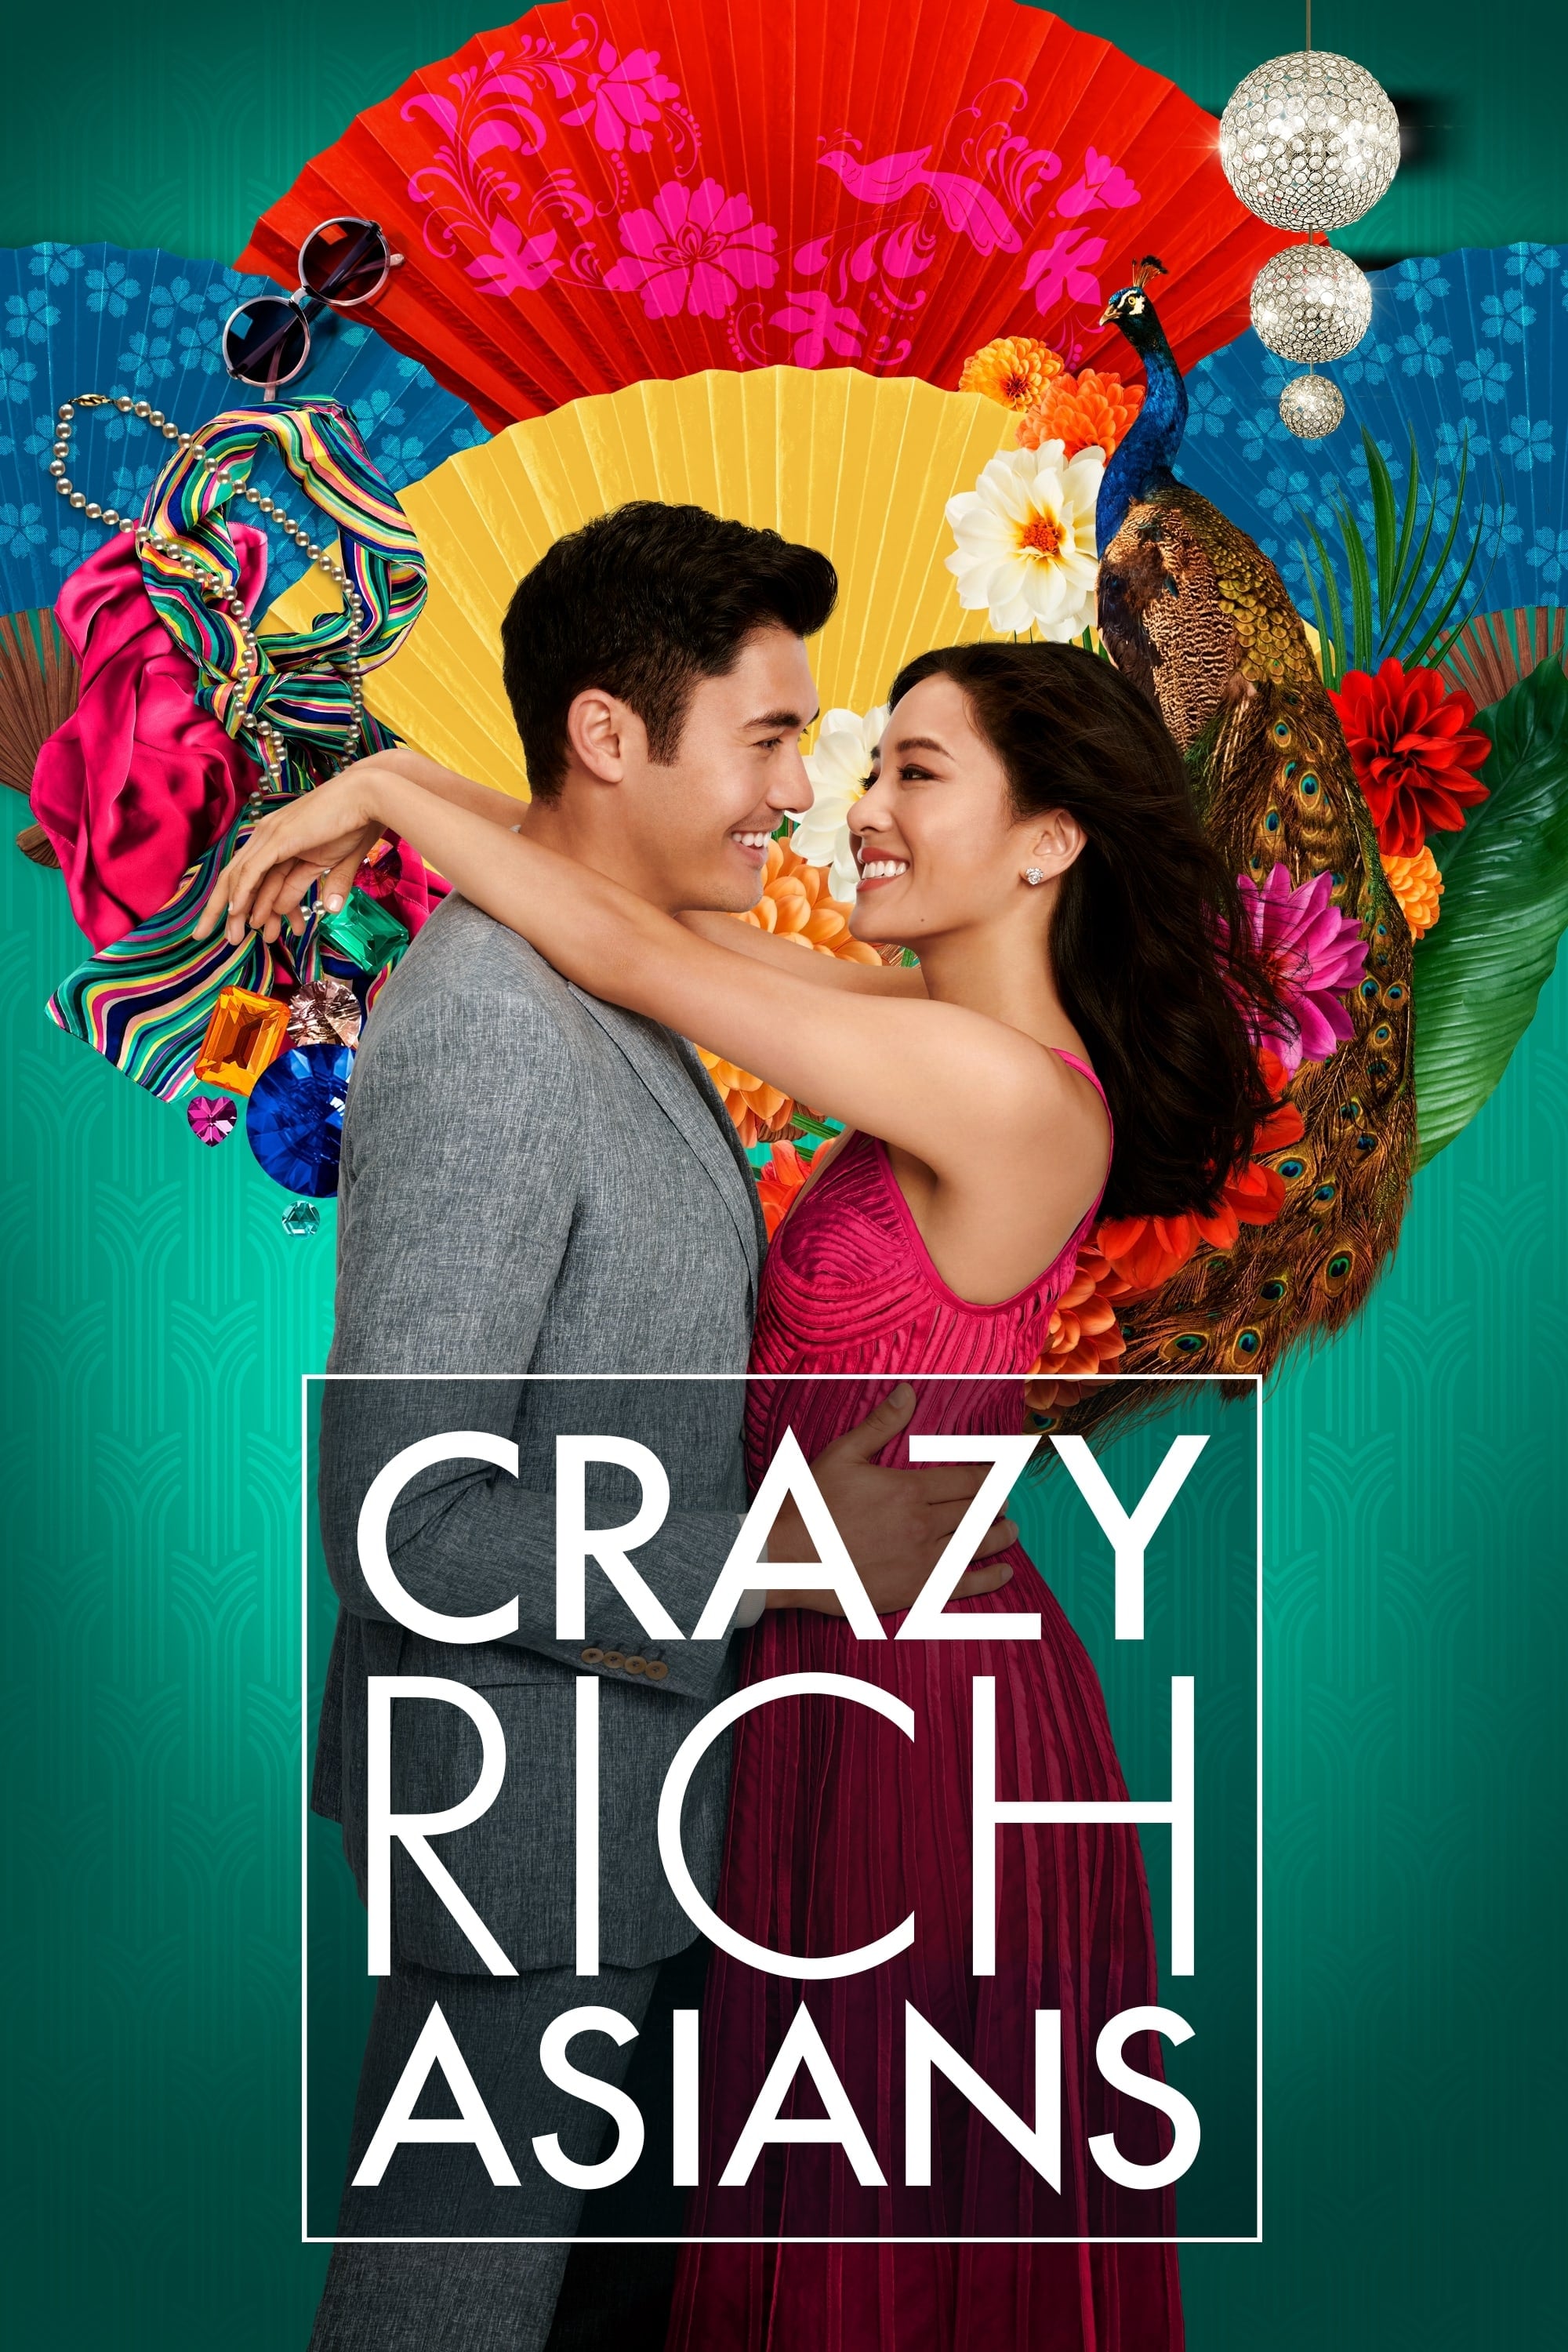 [4K HDR] Crazy Rich Asians 2018 2160p UHD Blu-ray HEVC DTS-HD MA 5.1 ...